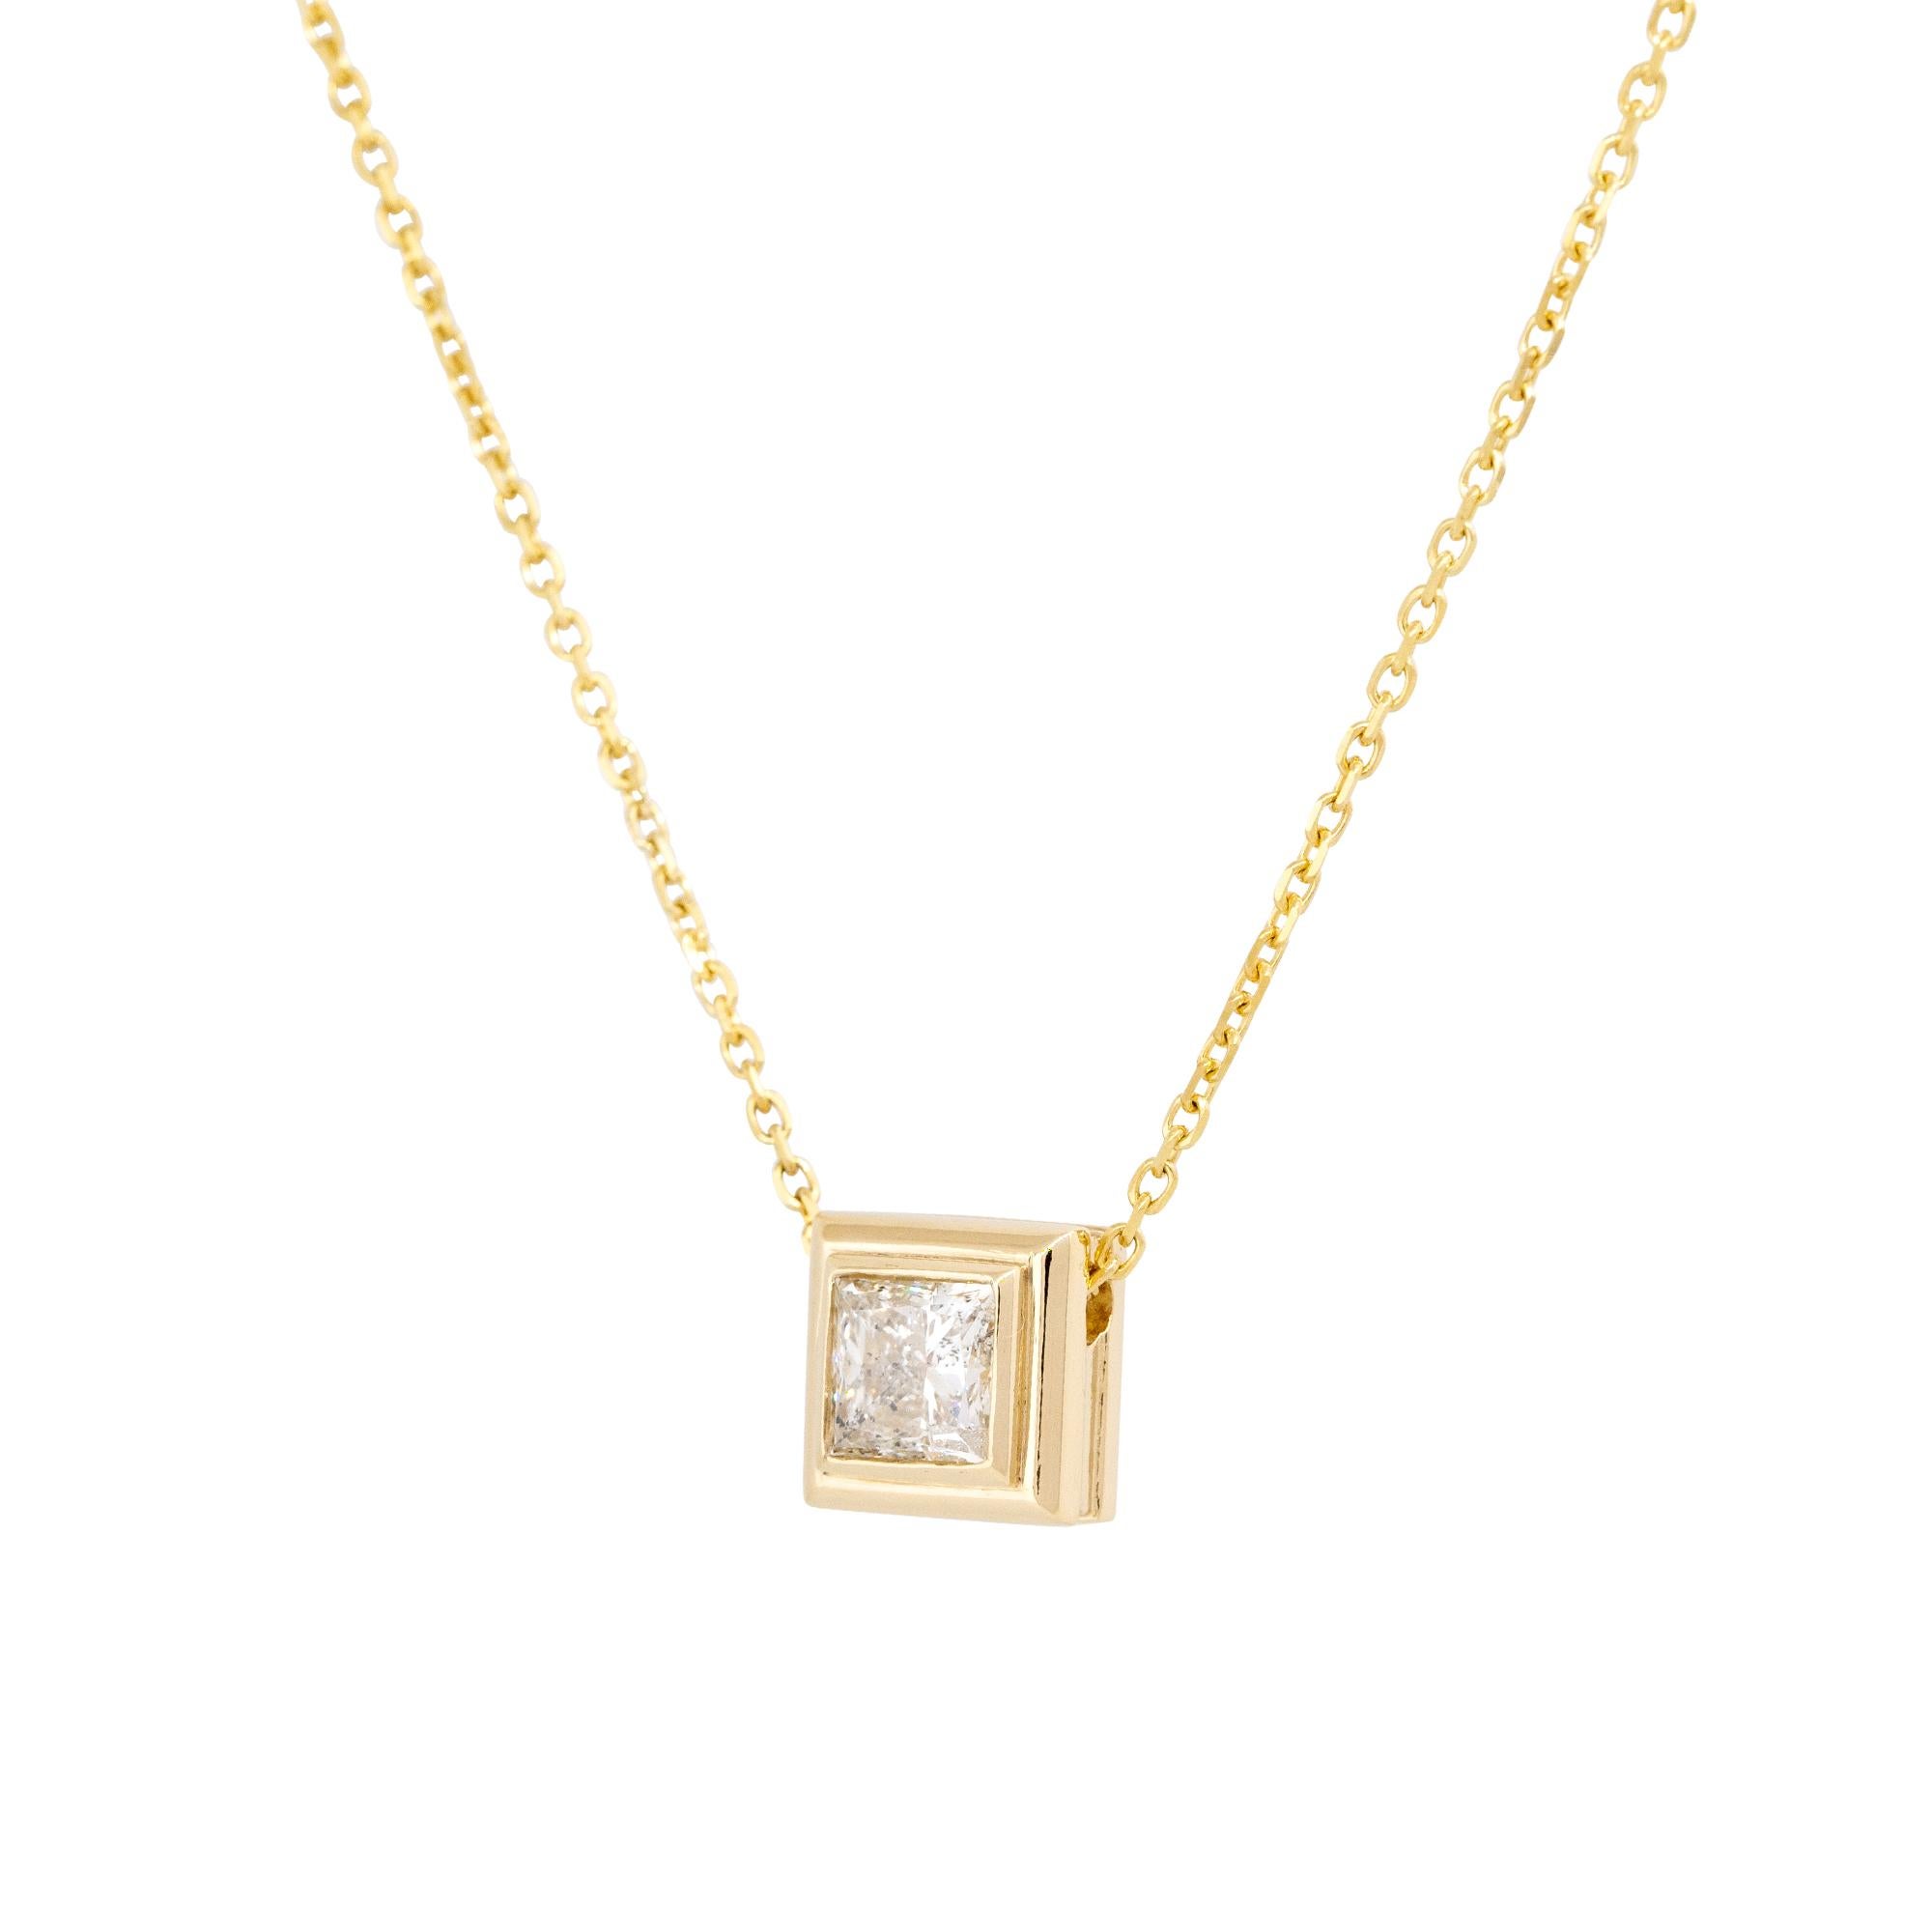 Diese schöne Diamant-Halskette mit Princess-Schliff ist ein klassisches Schmuckstück.  Er ist in 14 Karat Gelbgold gefasst und der Mittelstein hat eine gewisse Farbe, etwa J/K in der Farbe. Dieser Anhänger kann mit anderen Stücken oder Halsketten